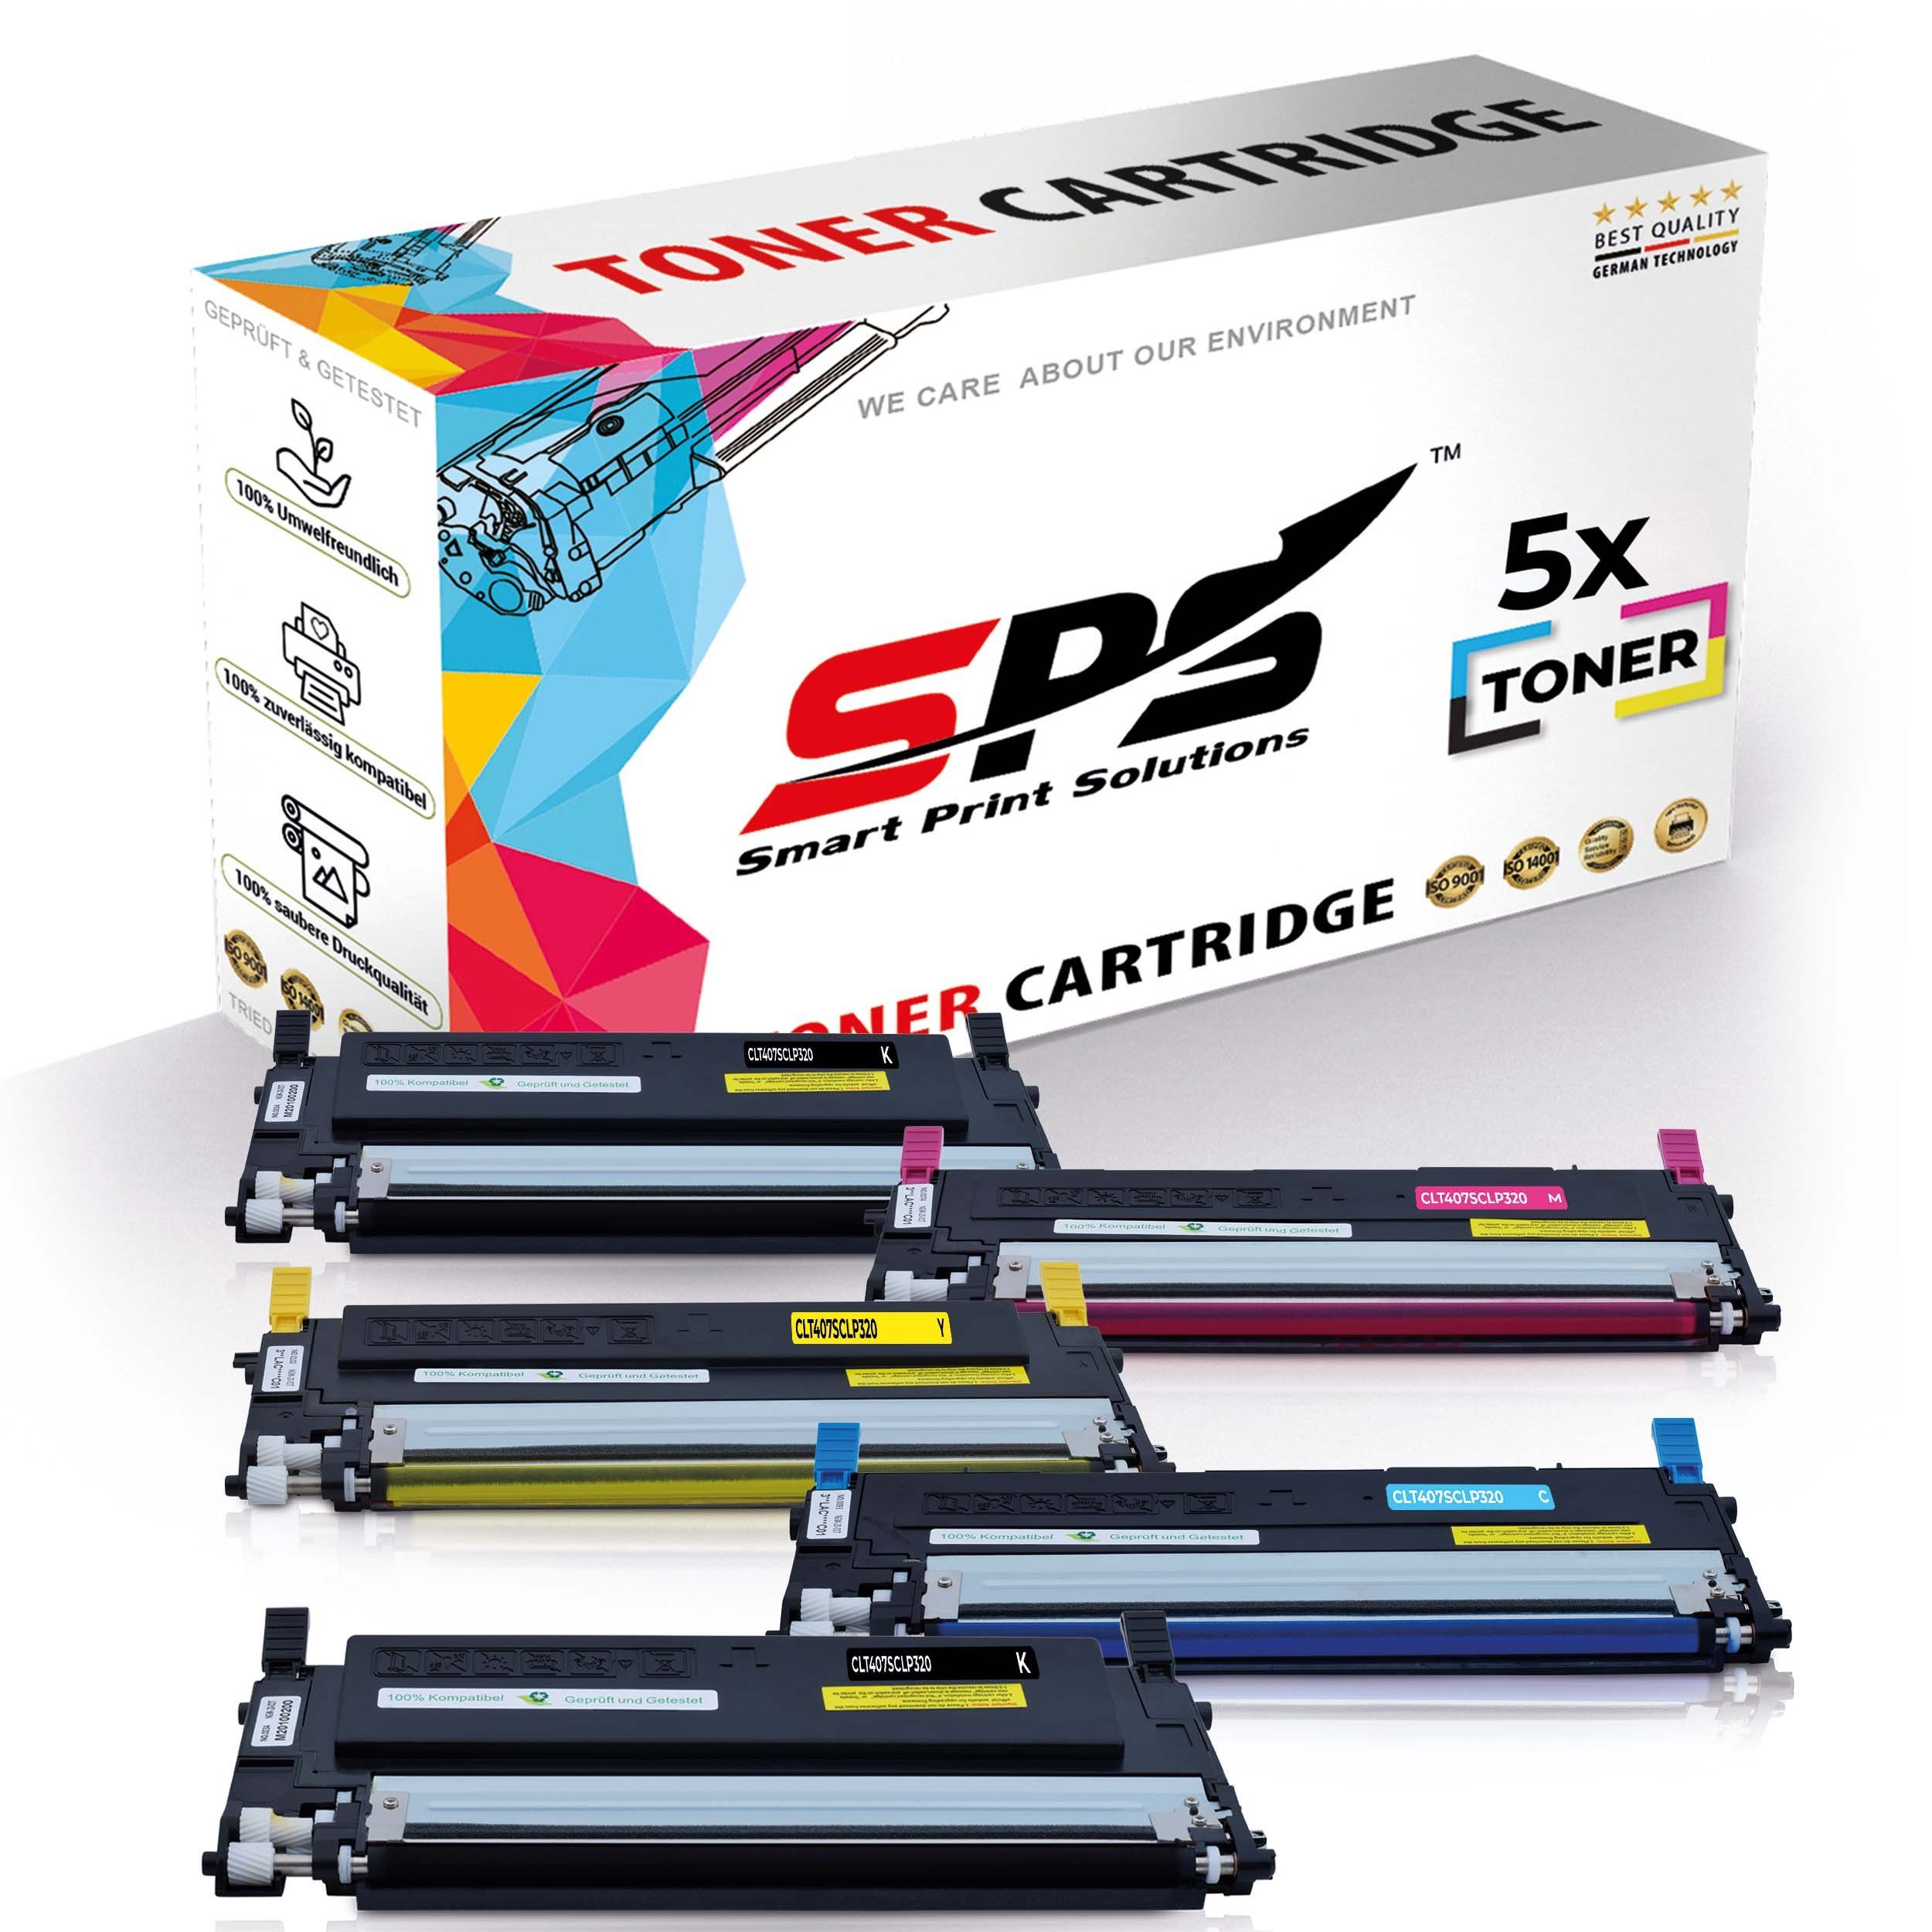 SPS Tonerkartusche Kompatibel für Samsung CLX-3185 C407 CLT-C407S, (5er Pack)